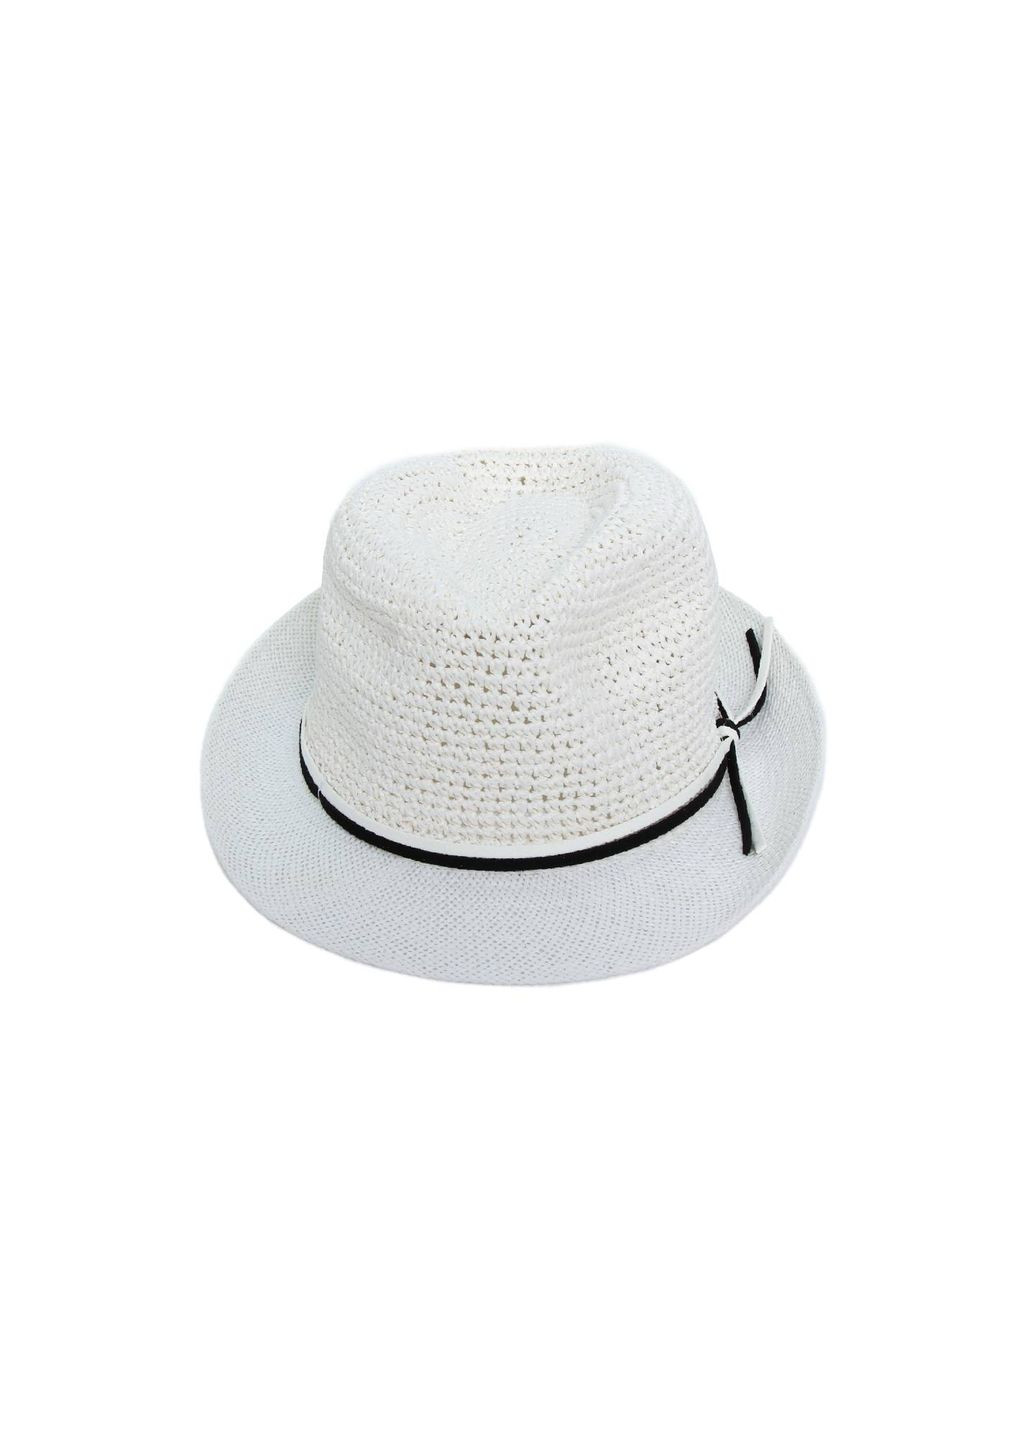 Шляпа трилби мужская бумага белая AGATA 376-886 LuckyLOOK 376-886м (289478339)